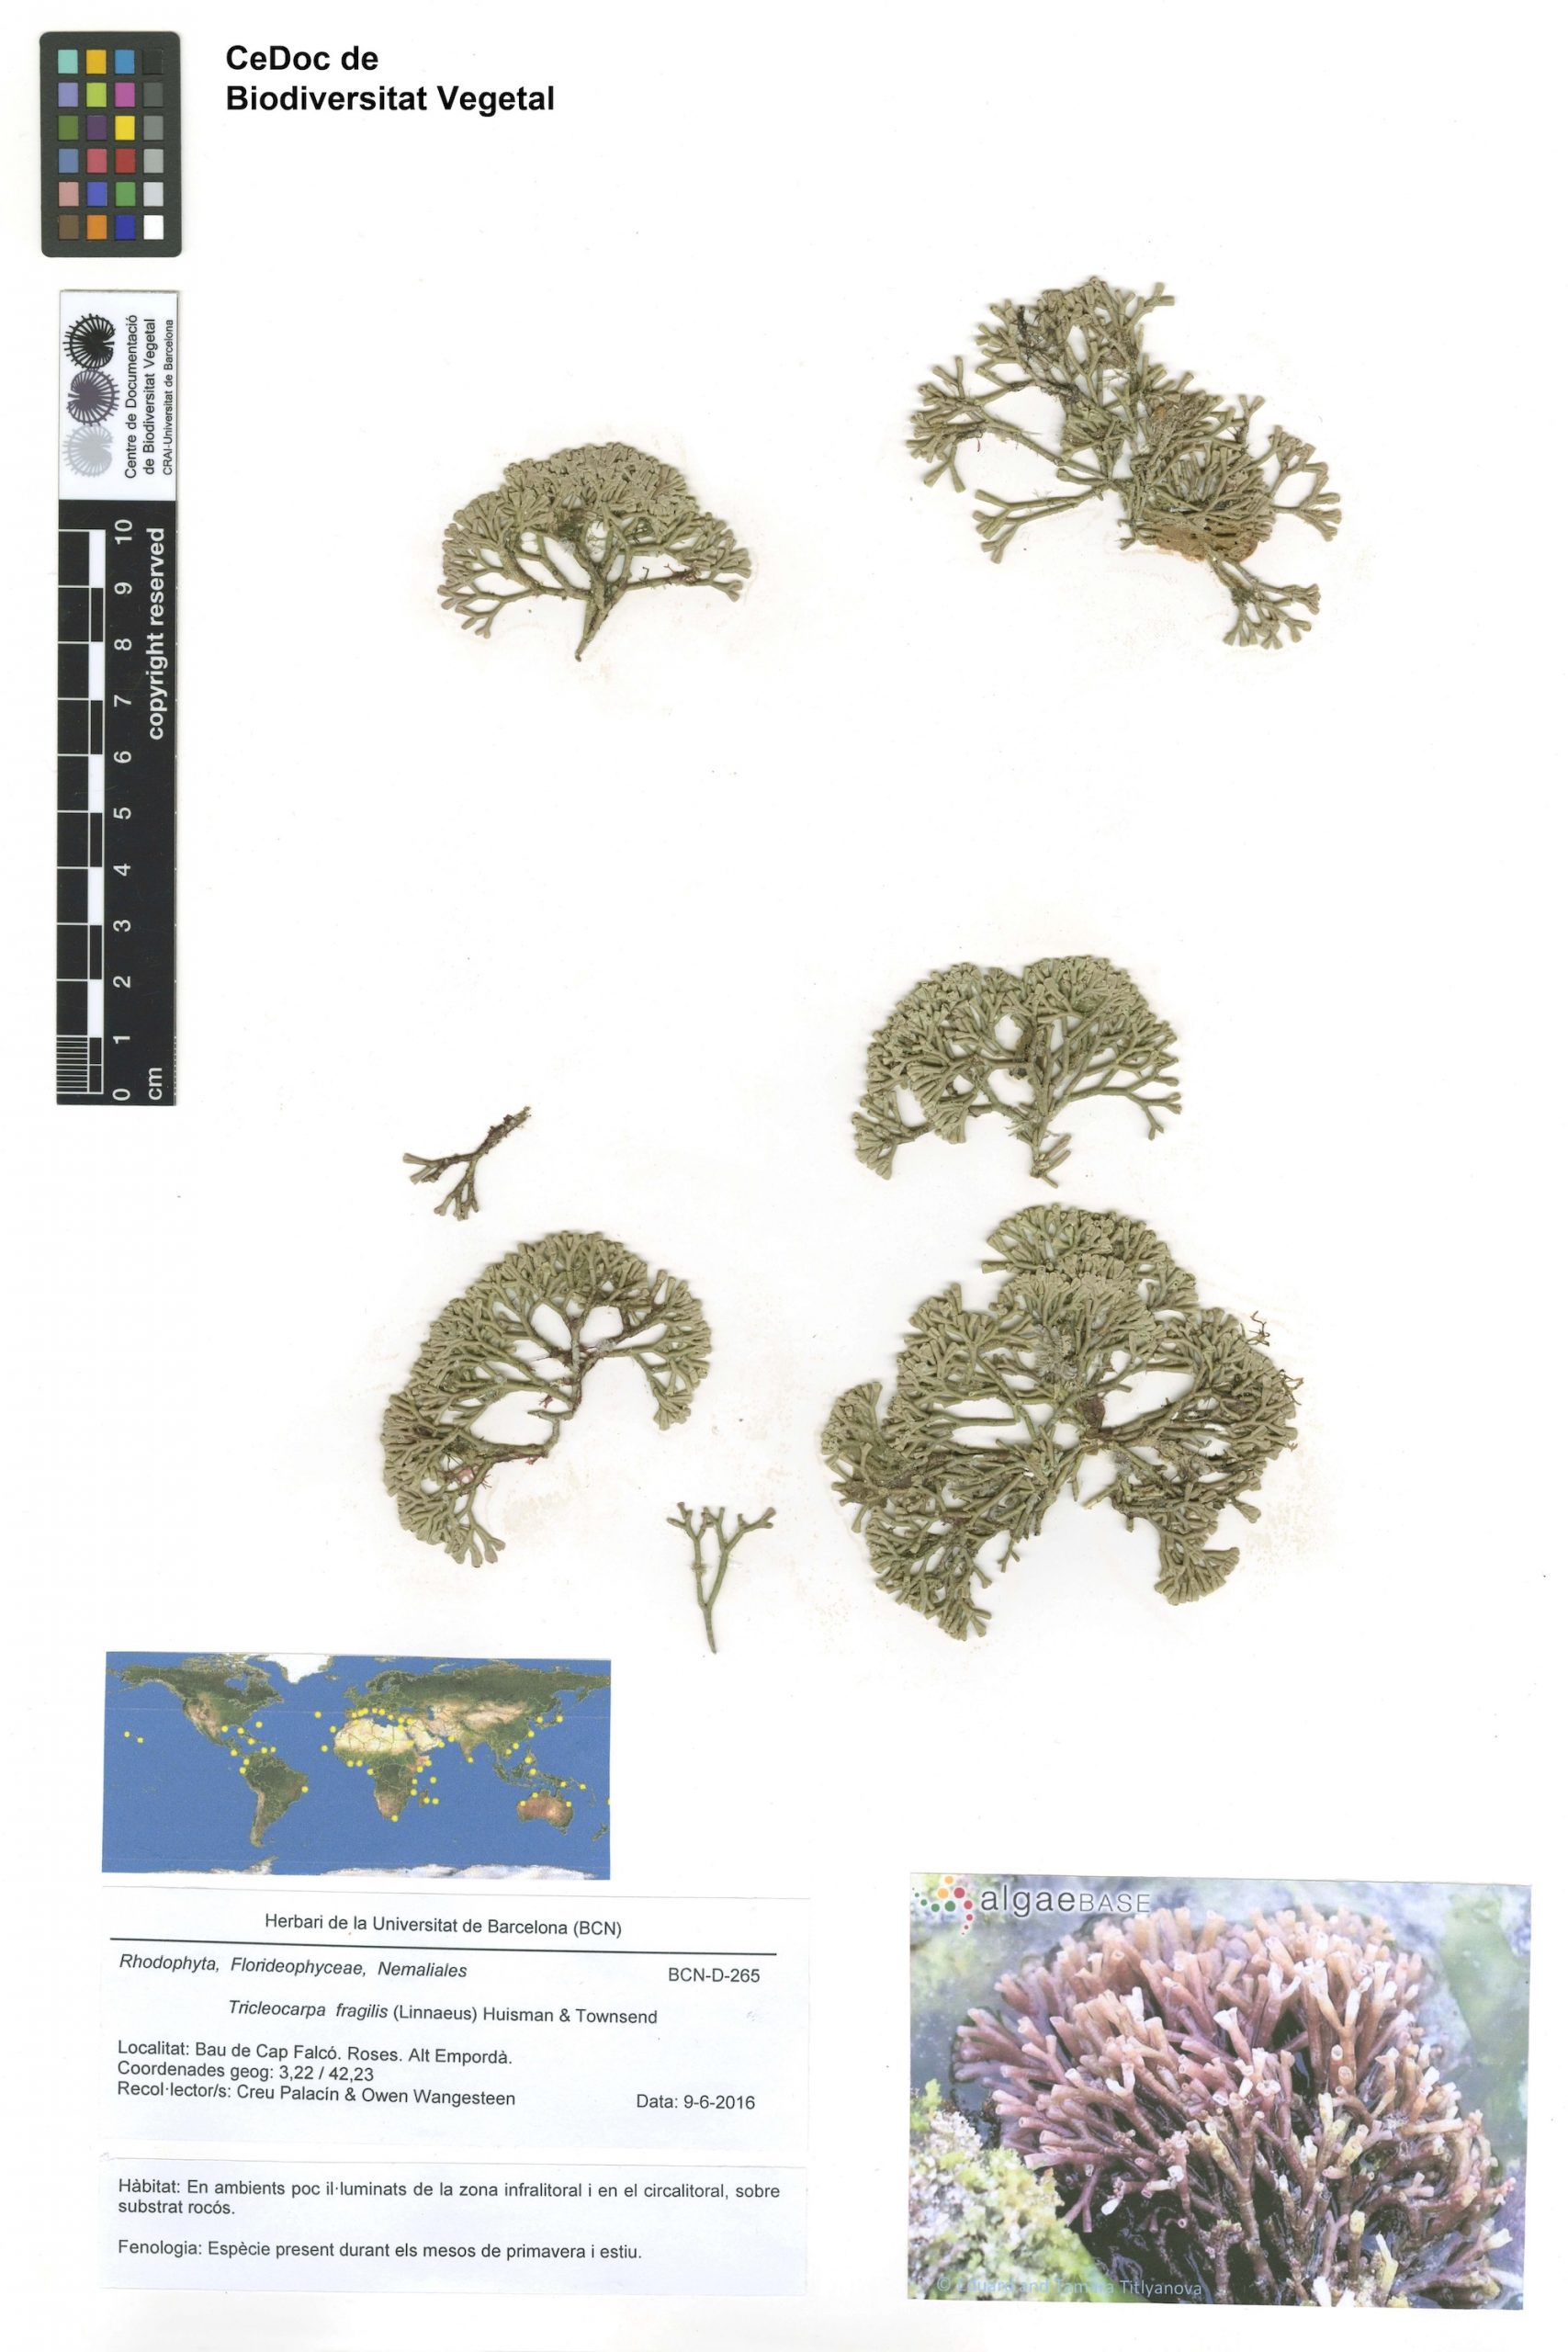 Tricleocarpa fragilis (Linnaeus) Huisman & Townsend